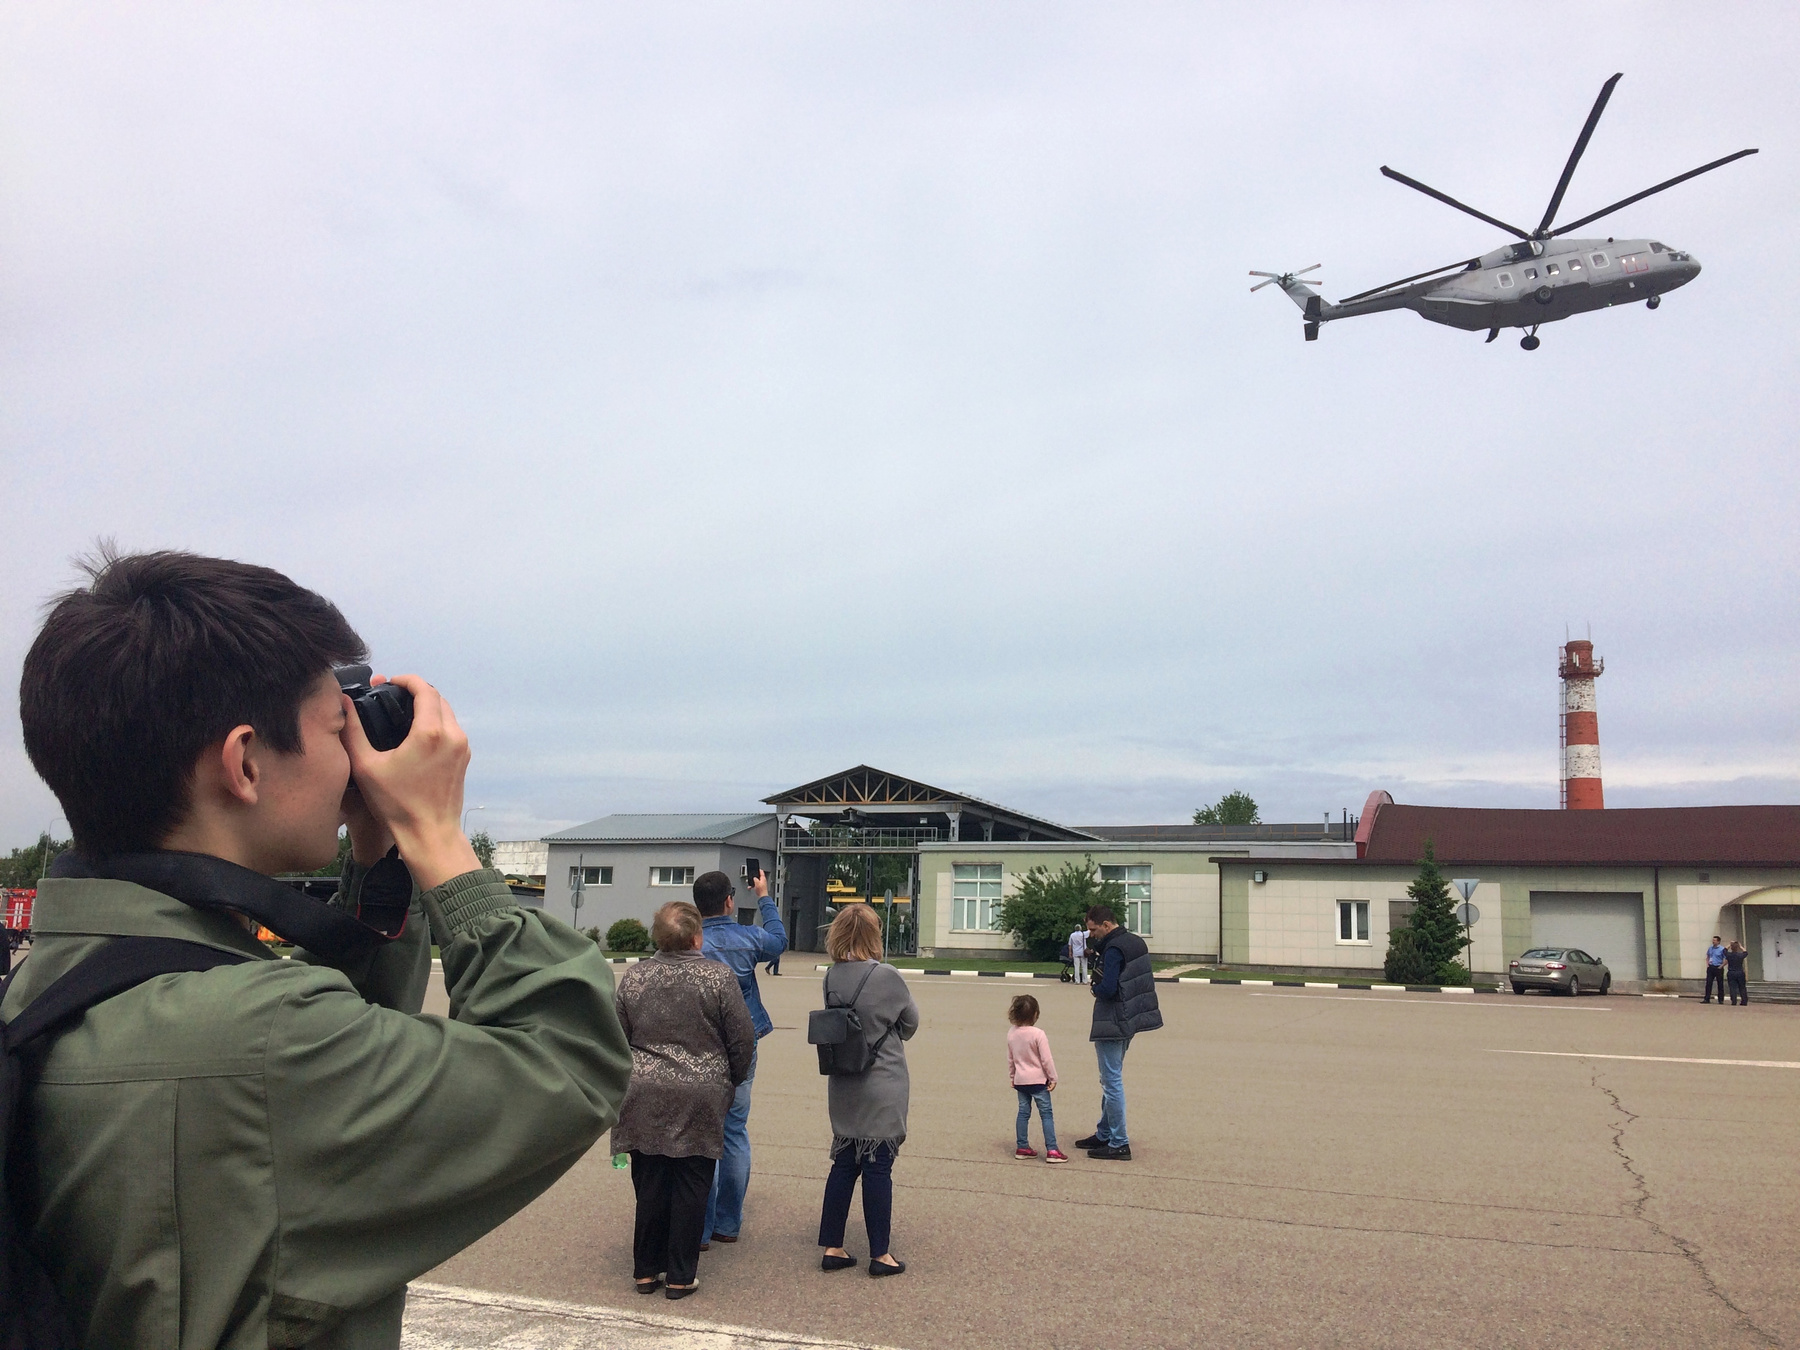 Взлетел Ми-38! ребёнок фотографирует вертолёт Ми-38